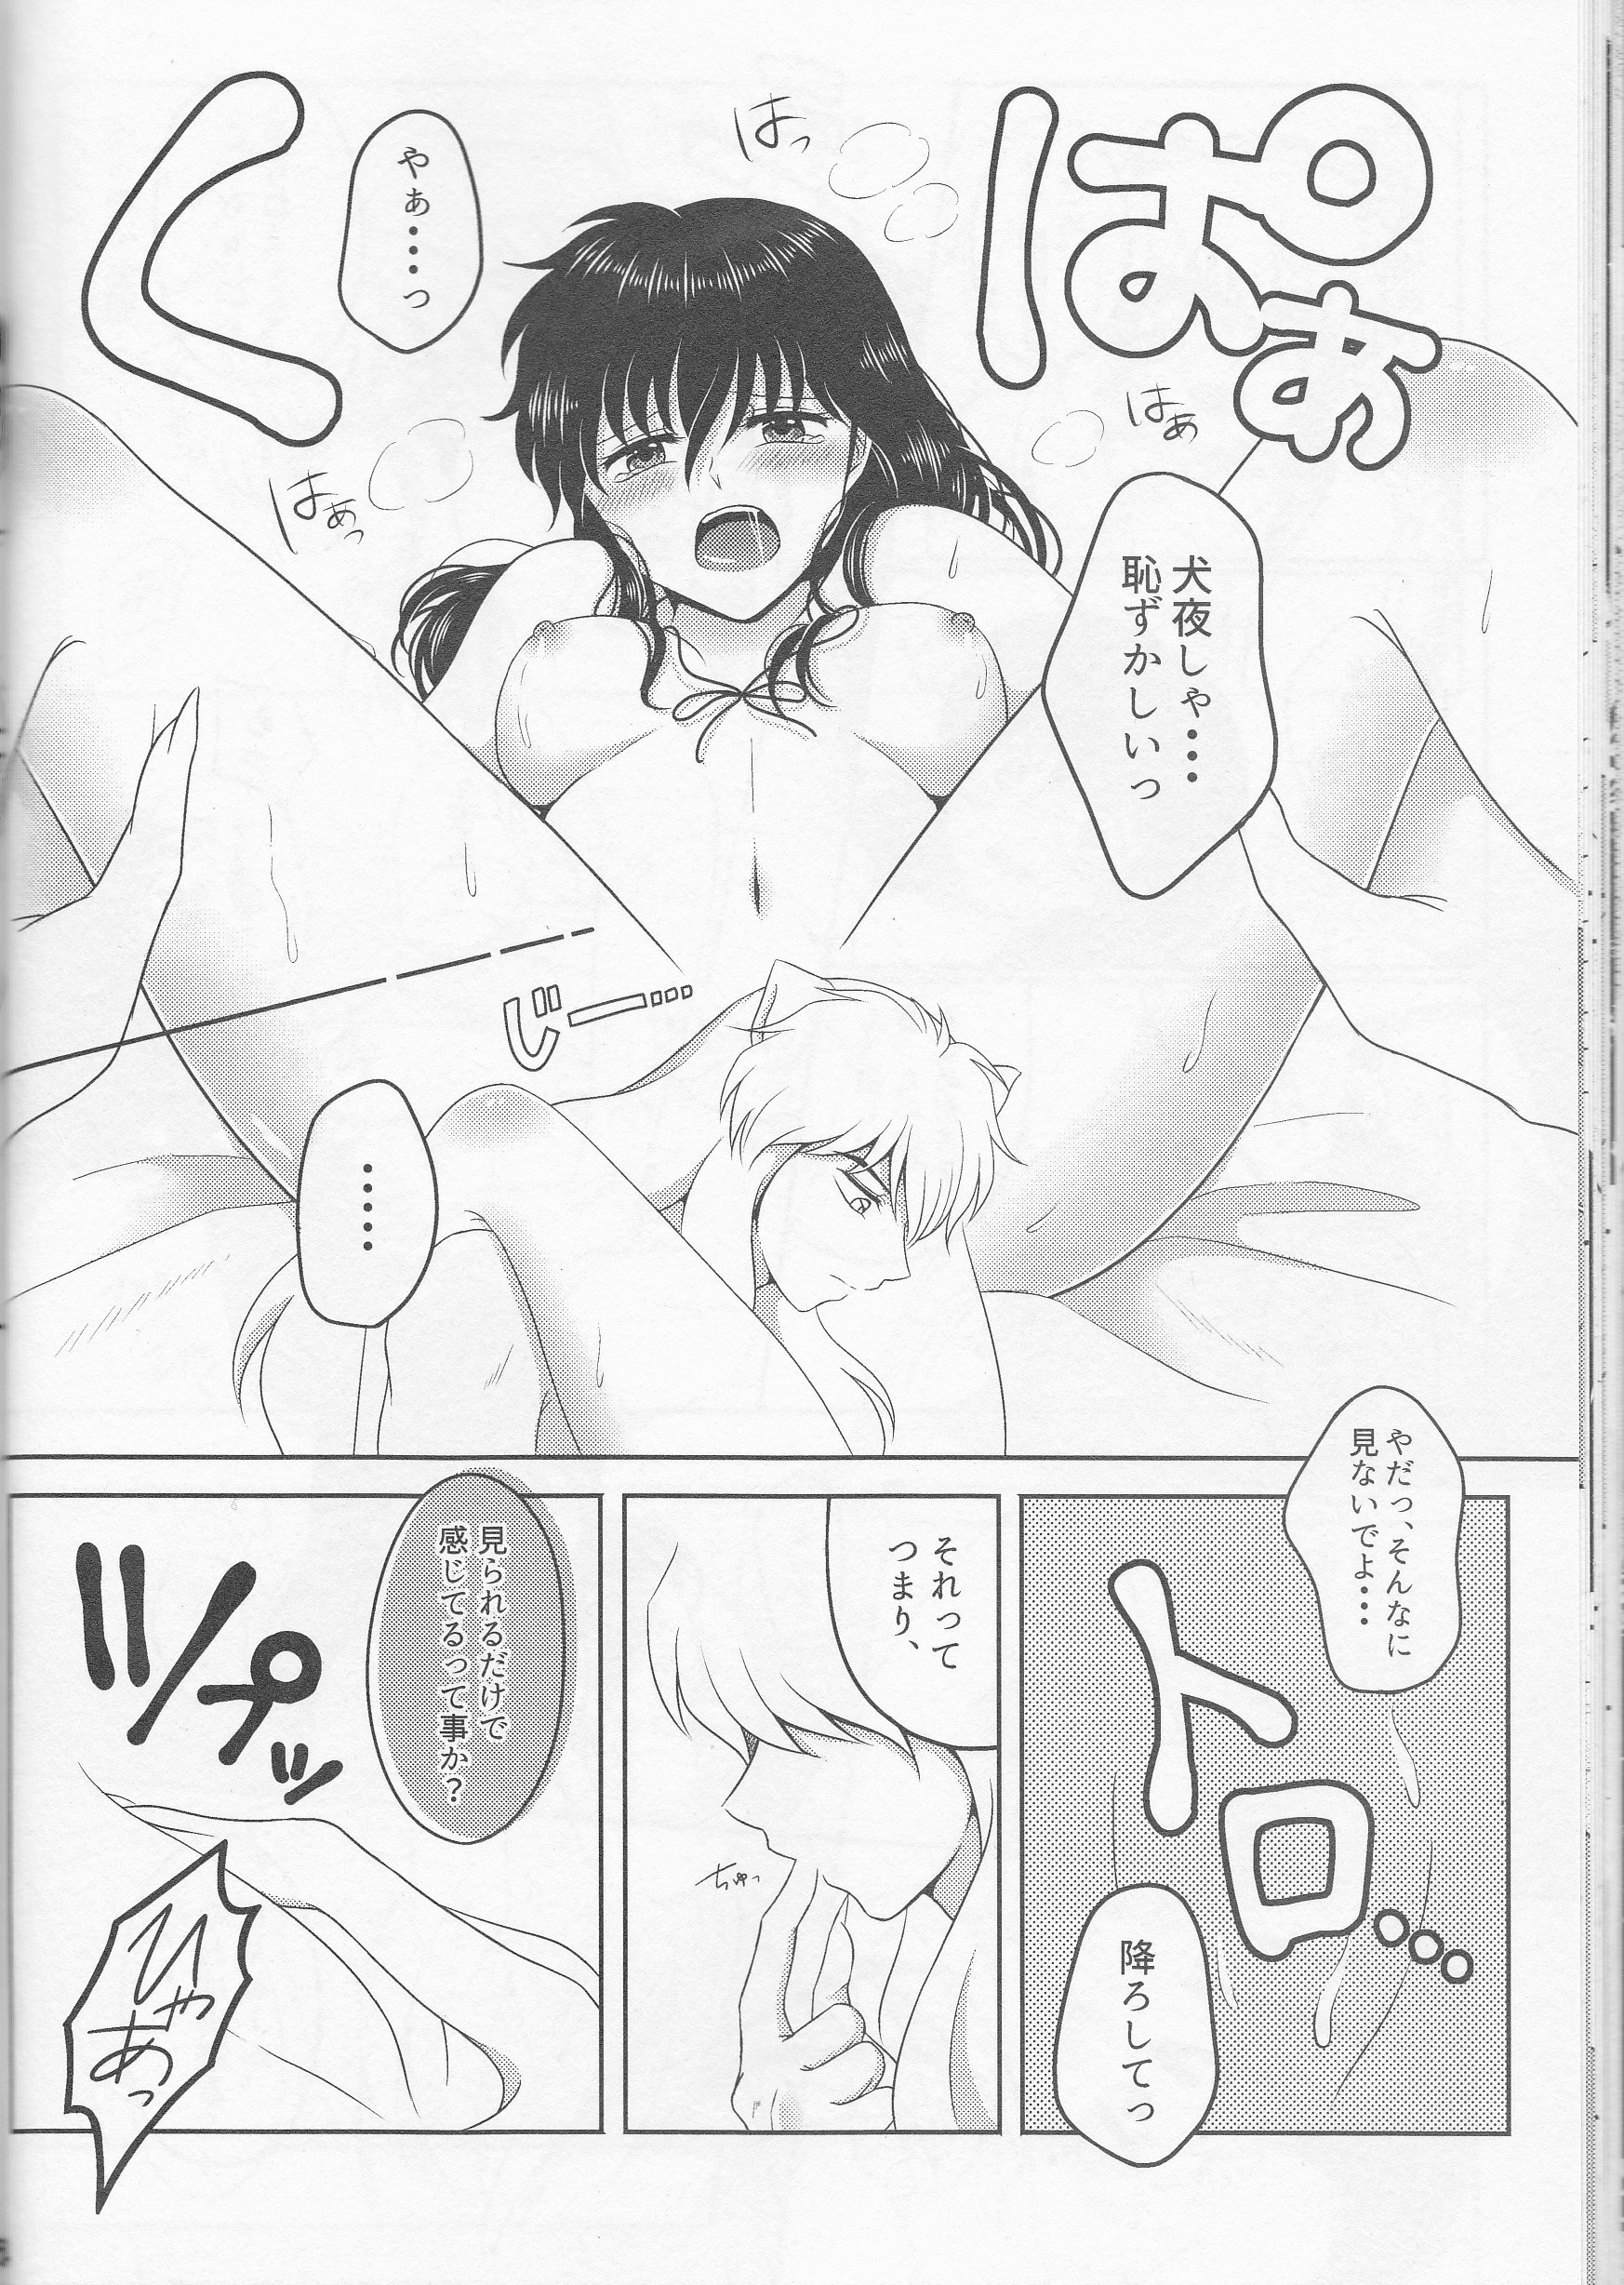 Koi Gusuri - Love drug hentai manga picture 21